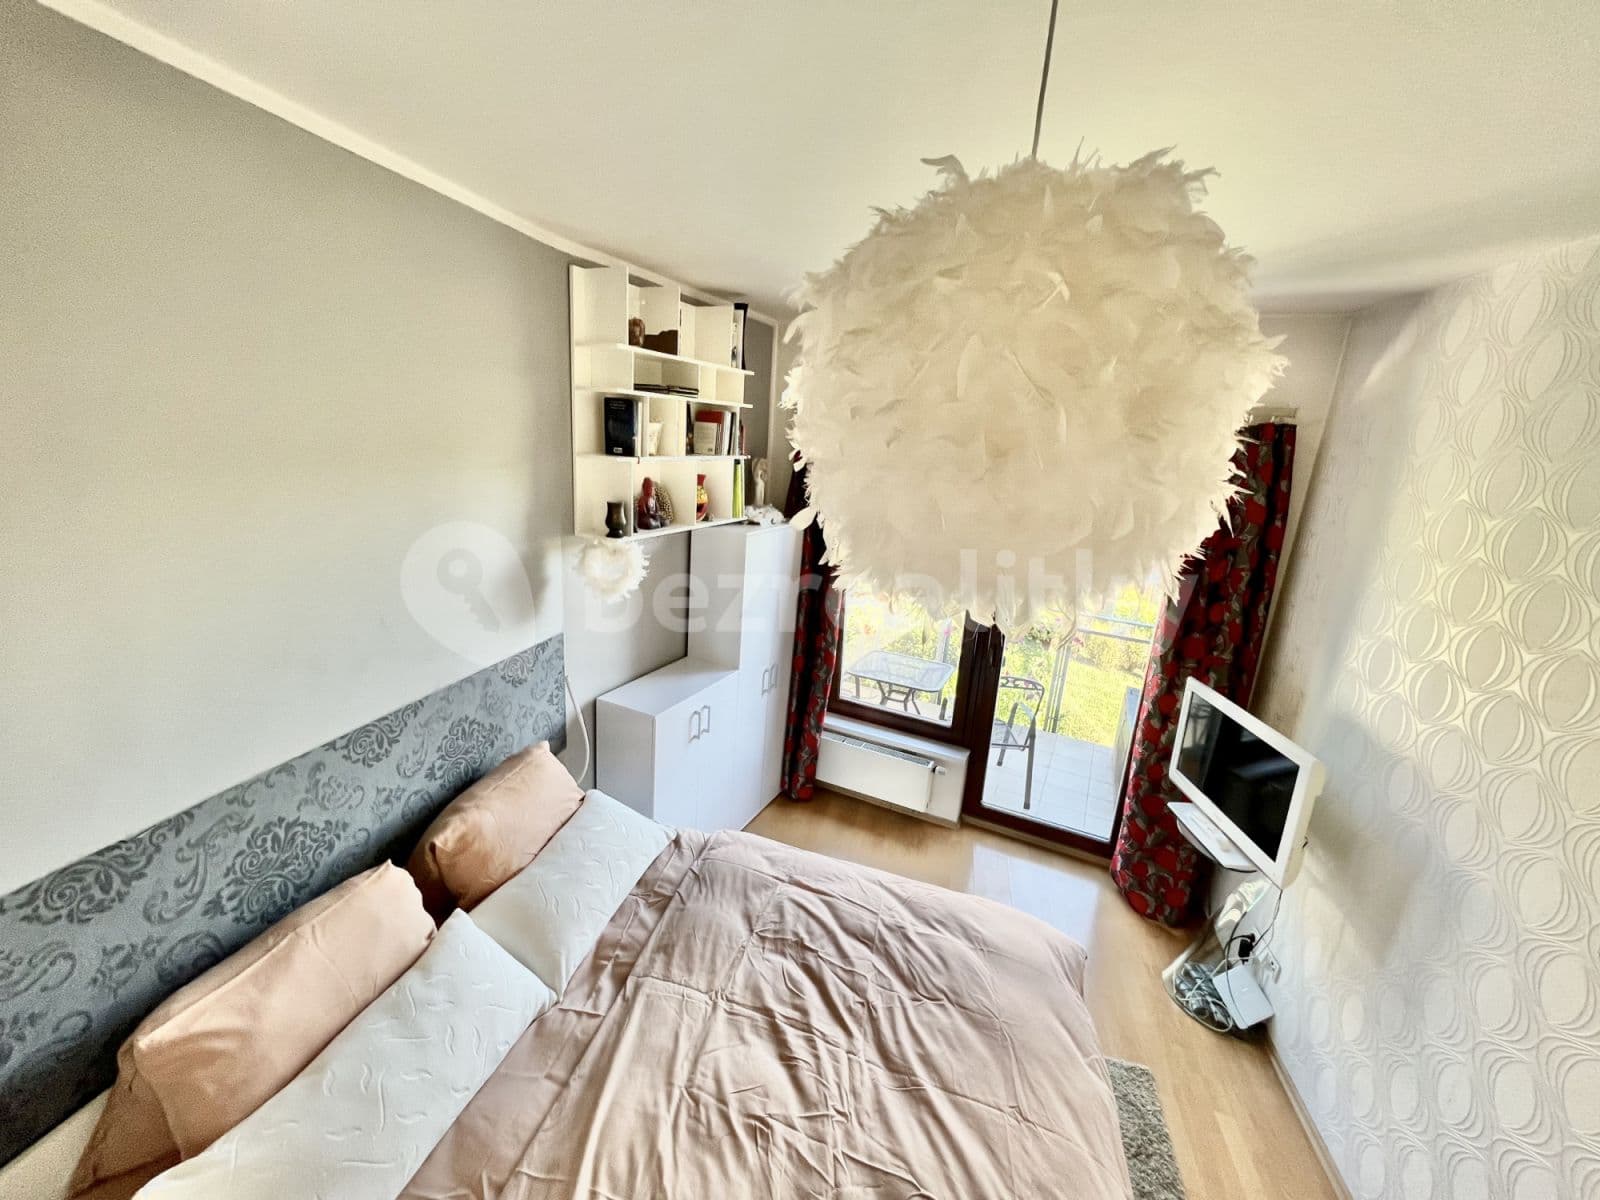 1 bedroom flat to rent, 30 m², Jeřabinová, Prague, Prague